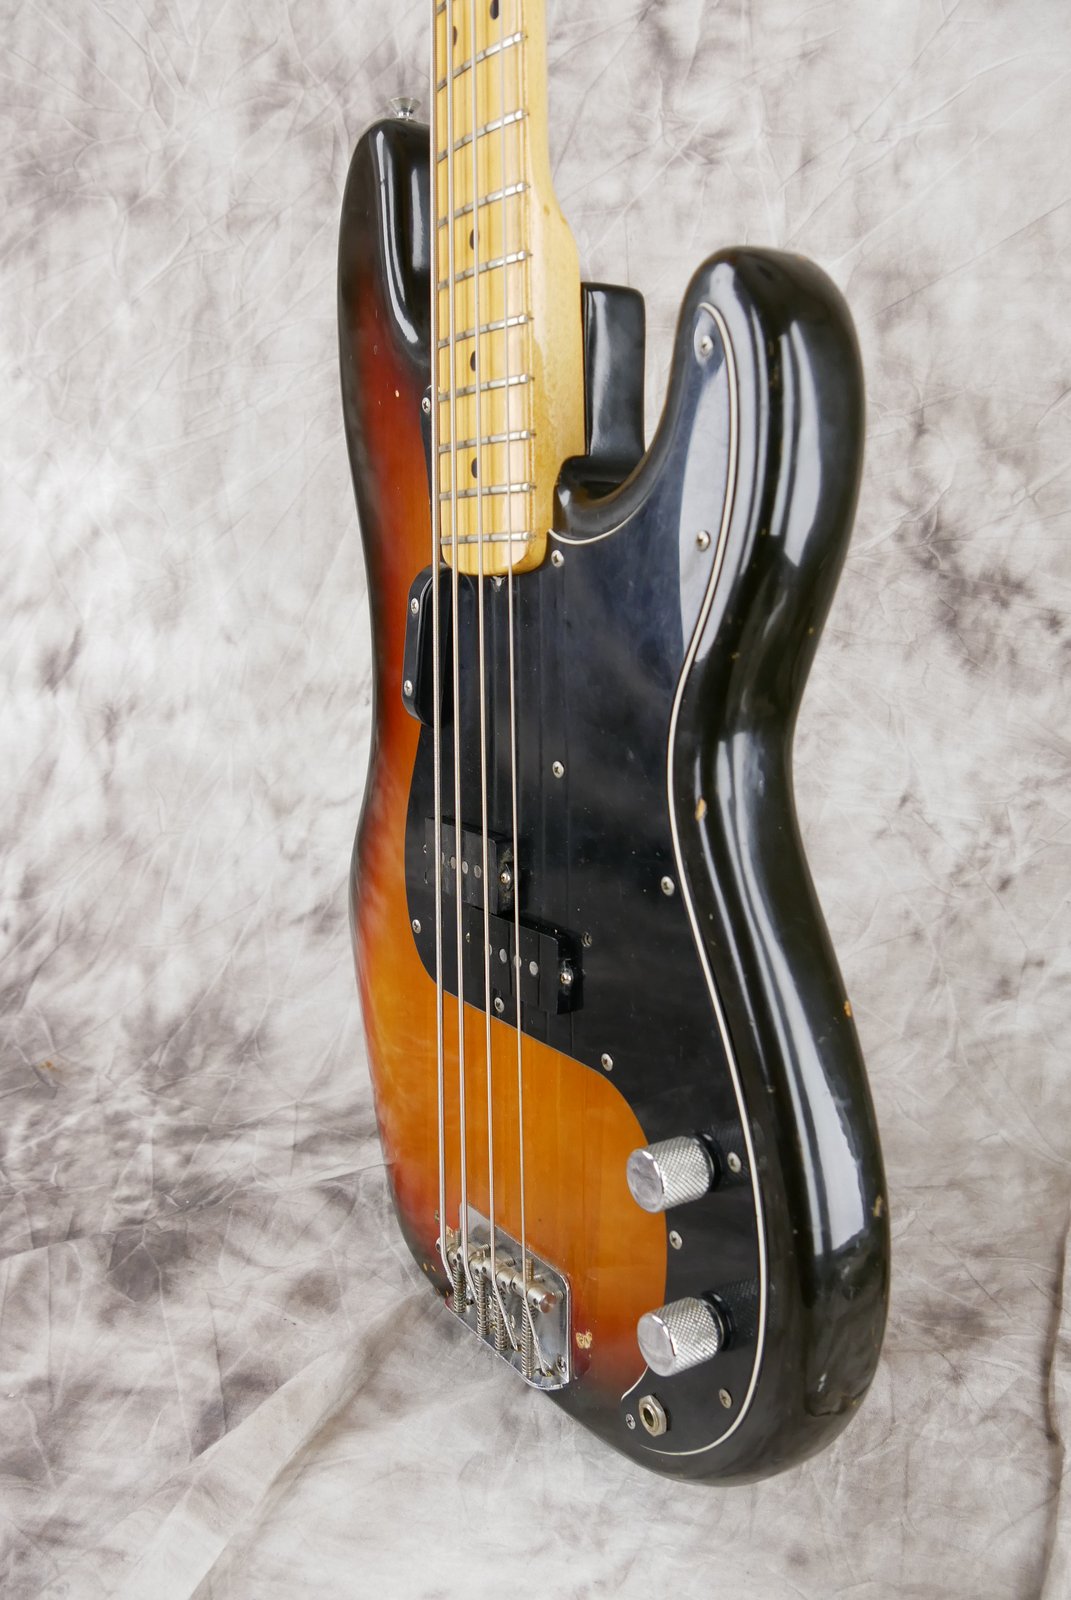 Fender-Precision-Bass-1974-sunburst-006.JPG